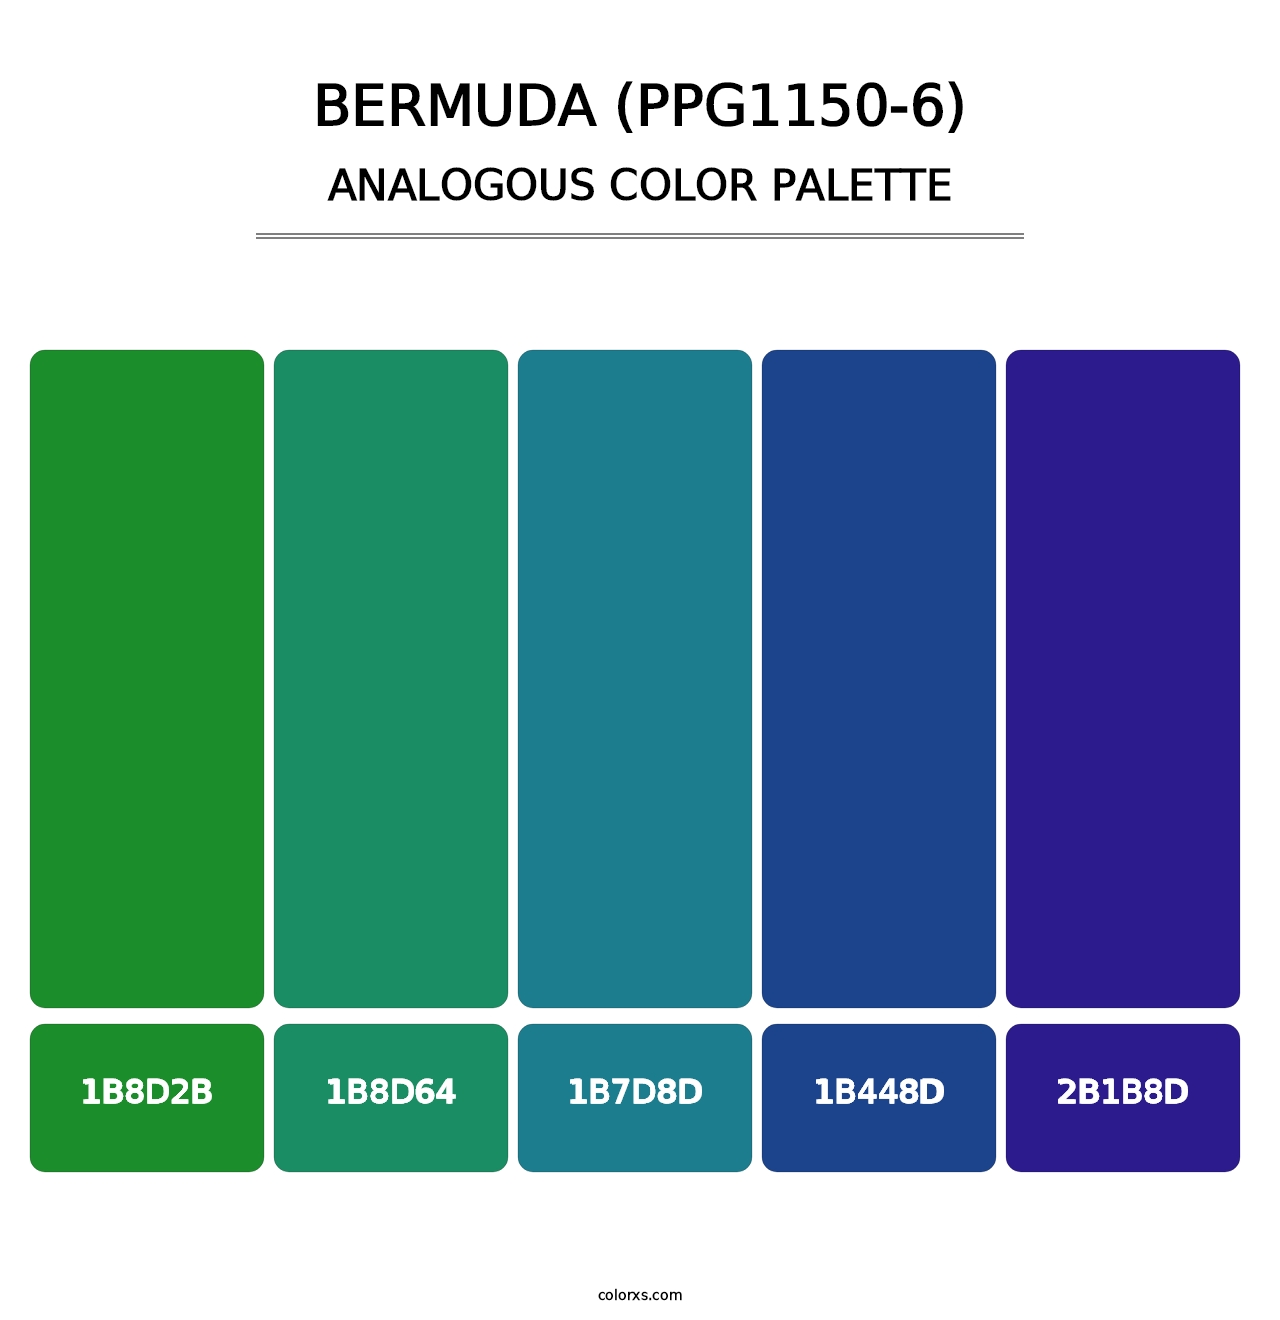 Bermuda (PPG1150-6) - Analogous Color Palette